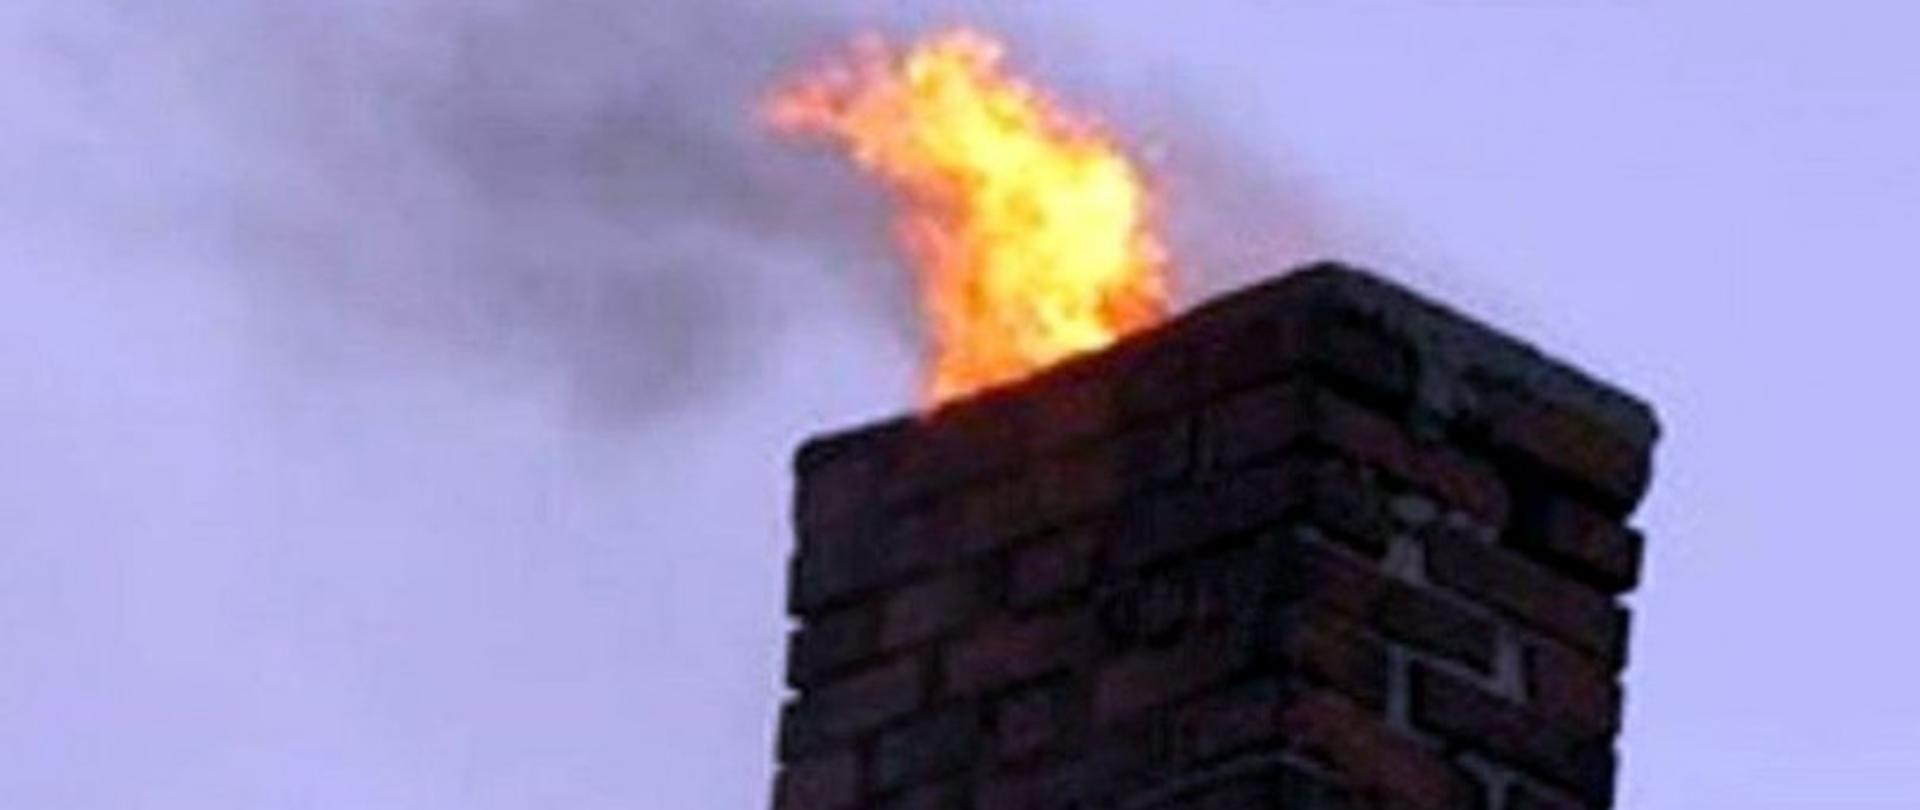 Widać ogień wydobywający się z komina, zdjęcie poglądowe